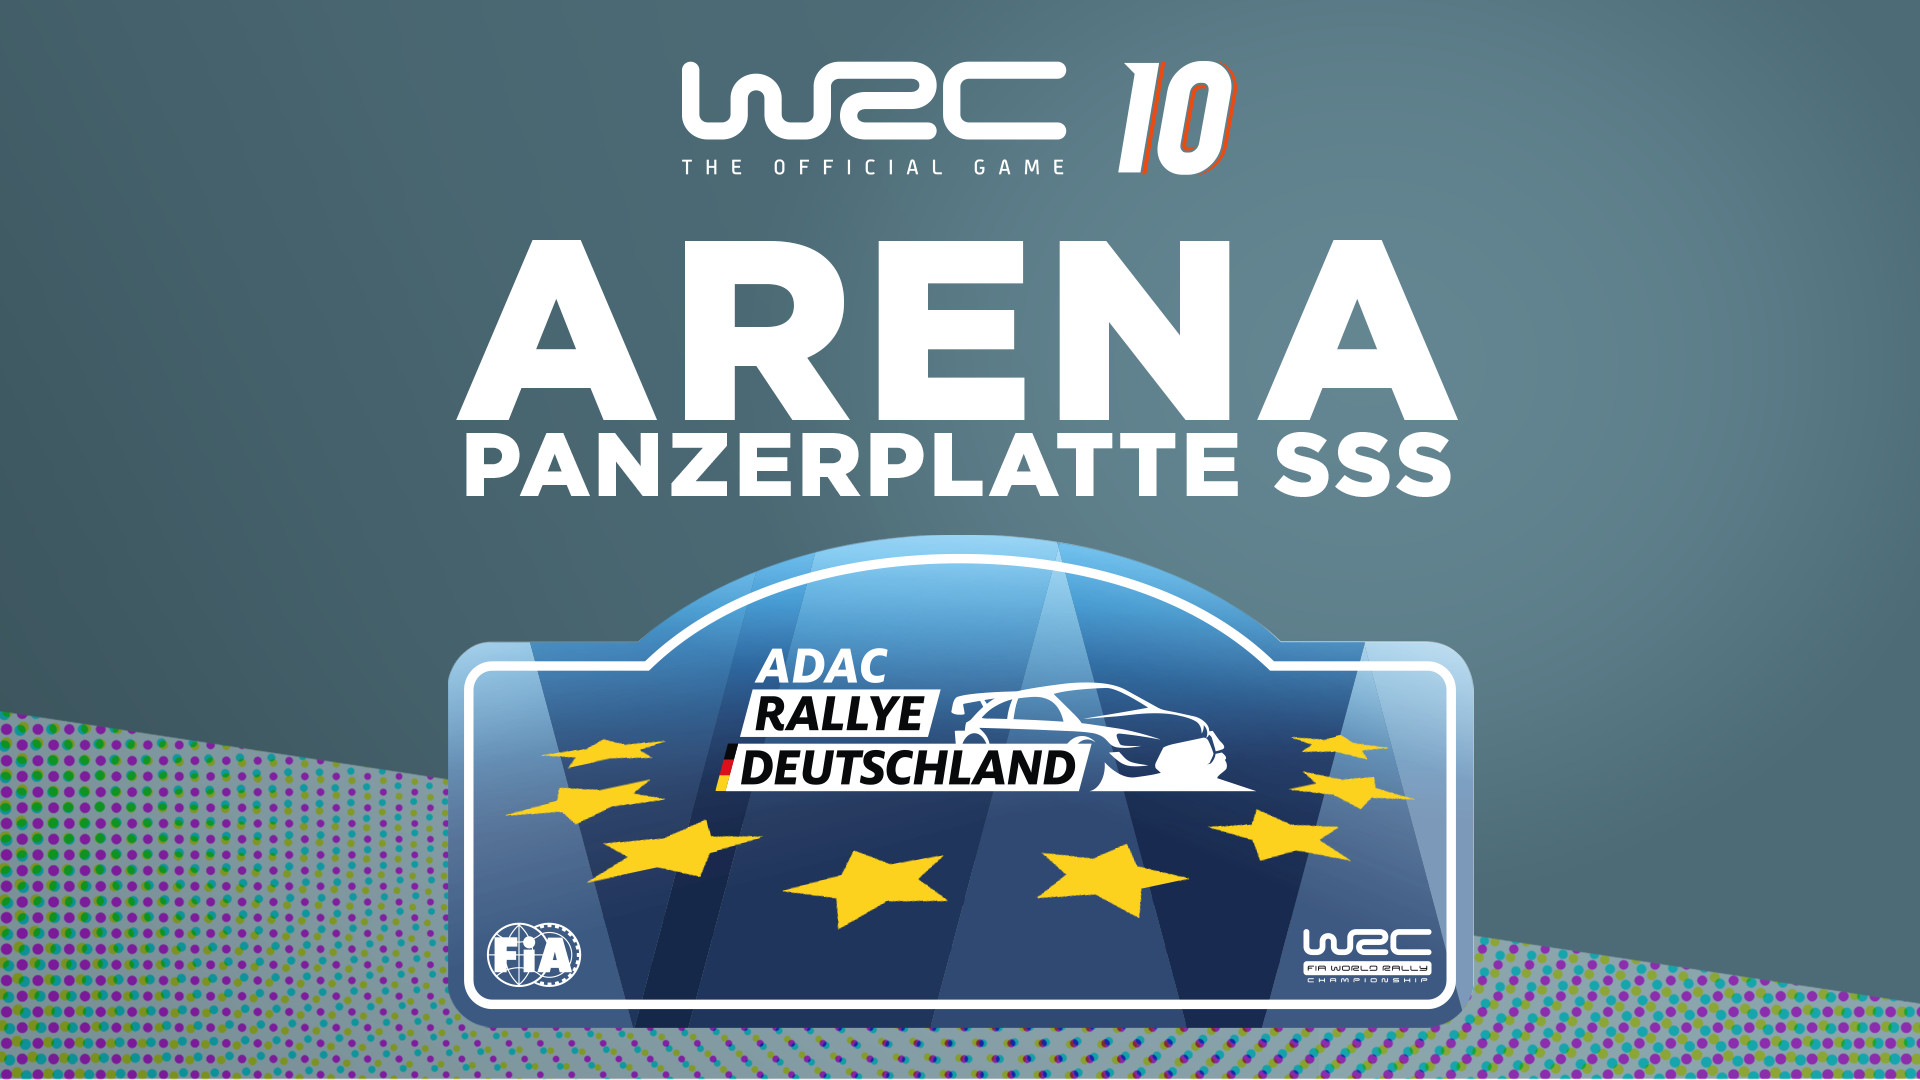 WRC 10 - Arena Panzerplatte SSS DLC Steam CD Key, 4.51$